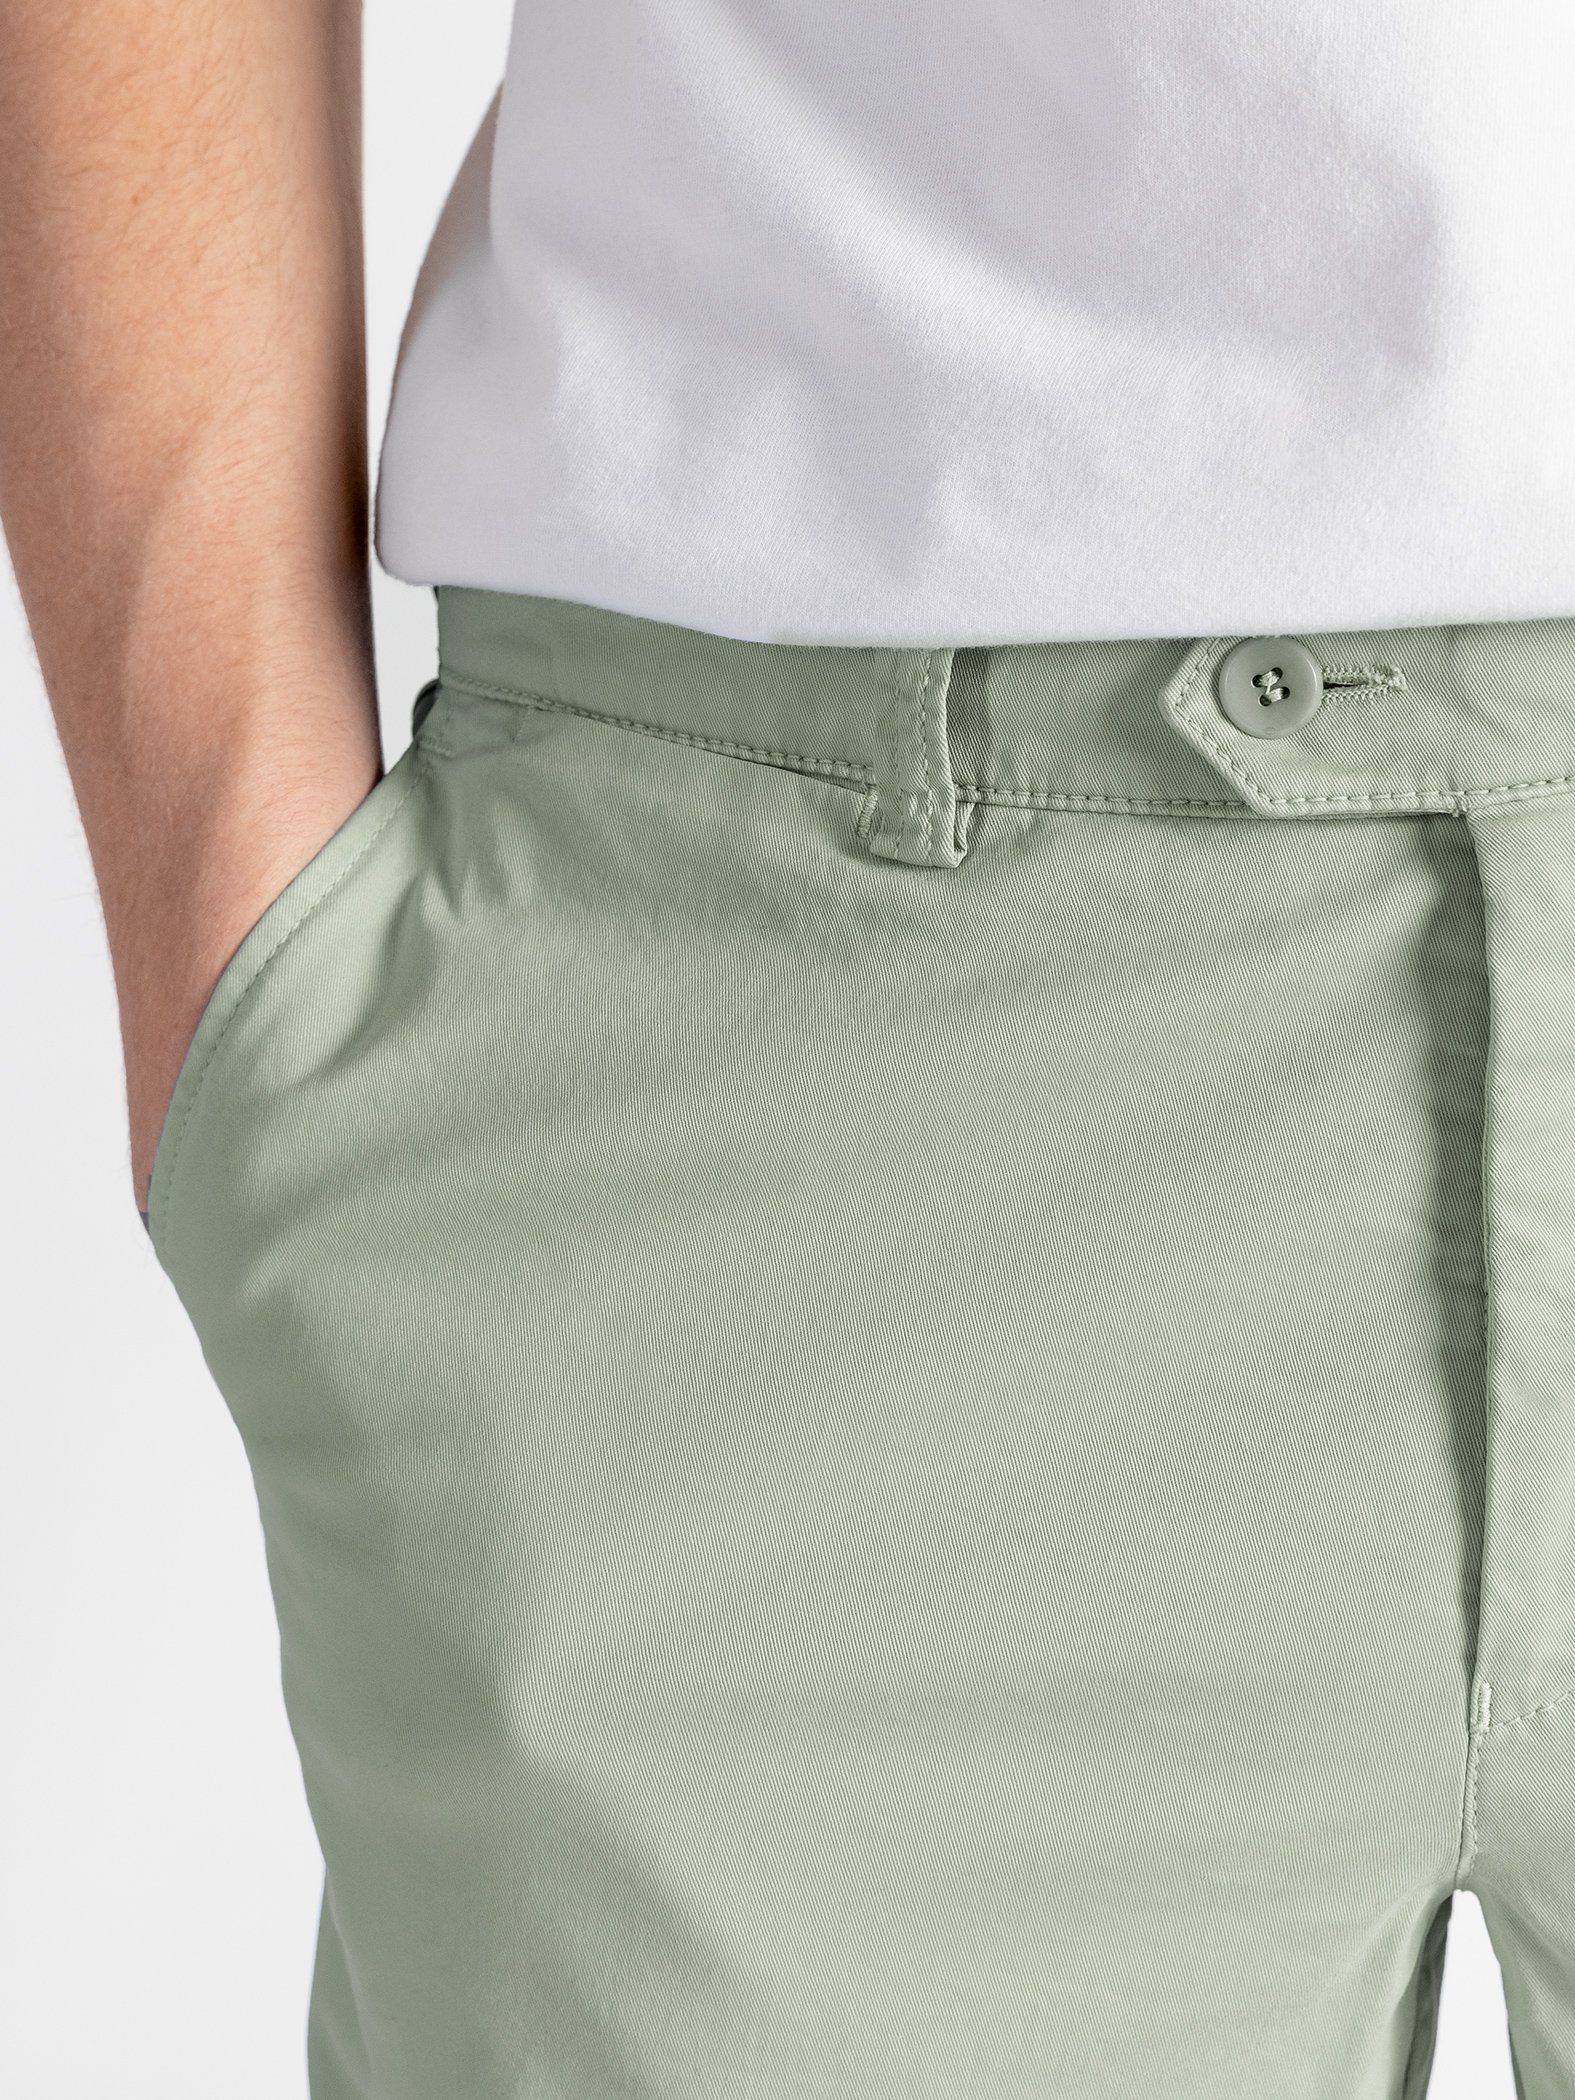 Shorts Bund, TwoMates Shorts hellgrün Farbauswahl, mit elastischem GOTS-zertifiziert